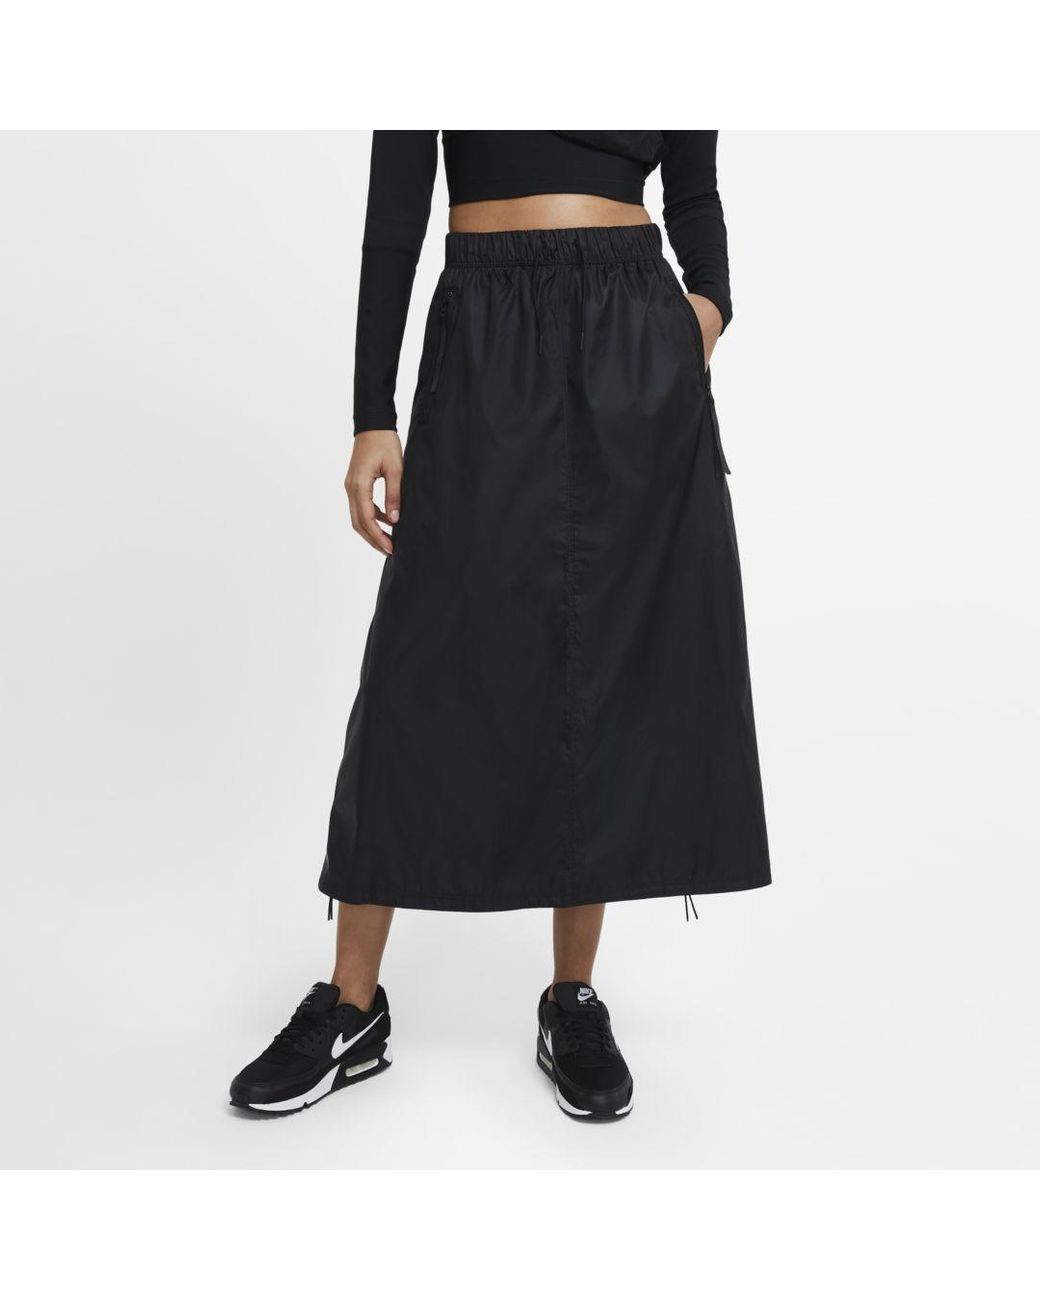 Nike Sportswear Tech Pack Woven Skirt in Black | Lyst